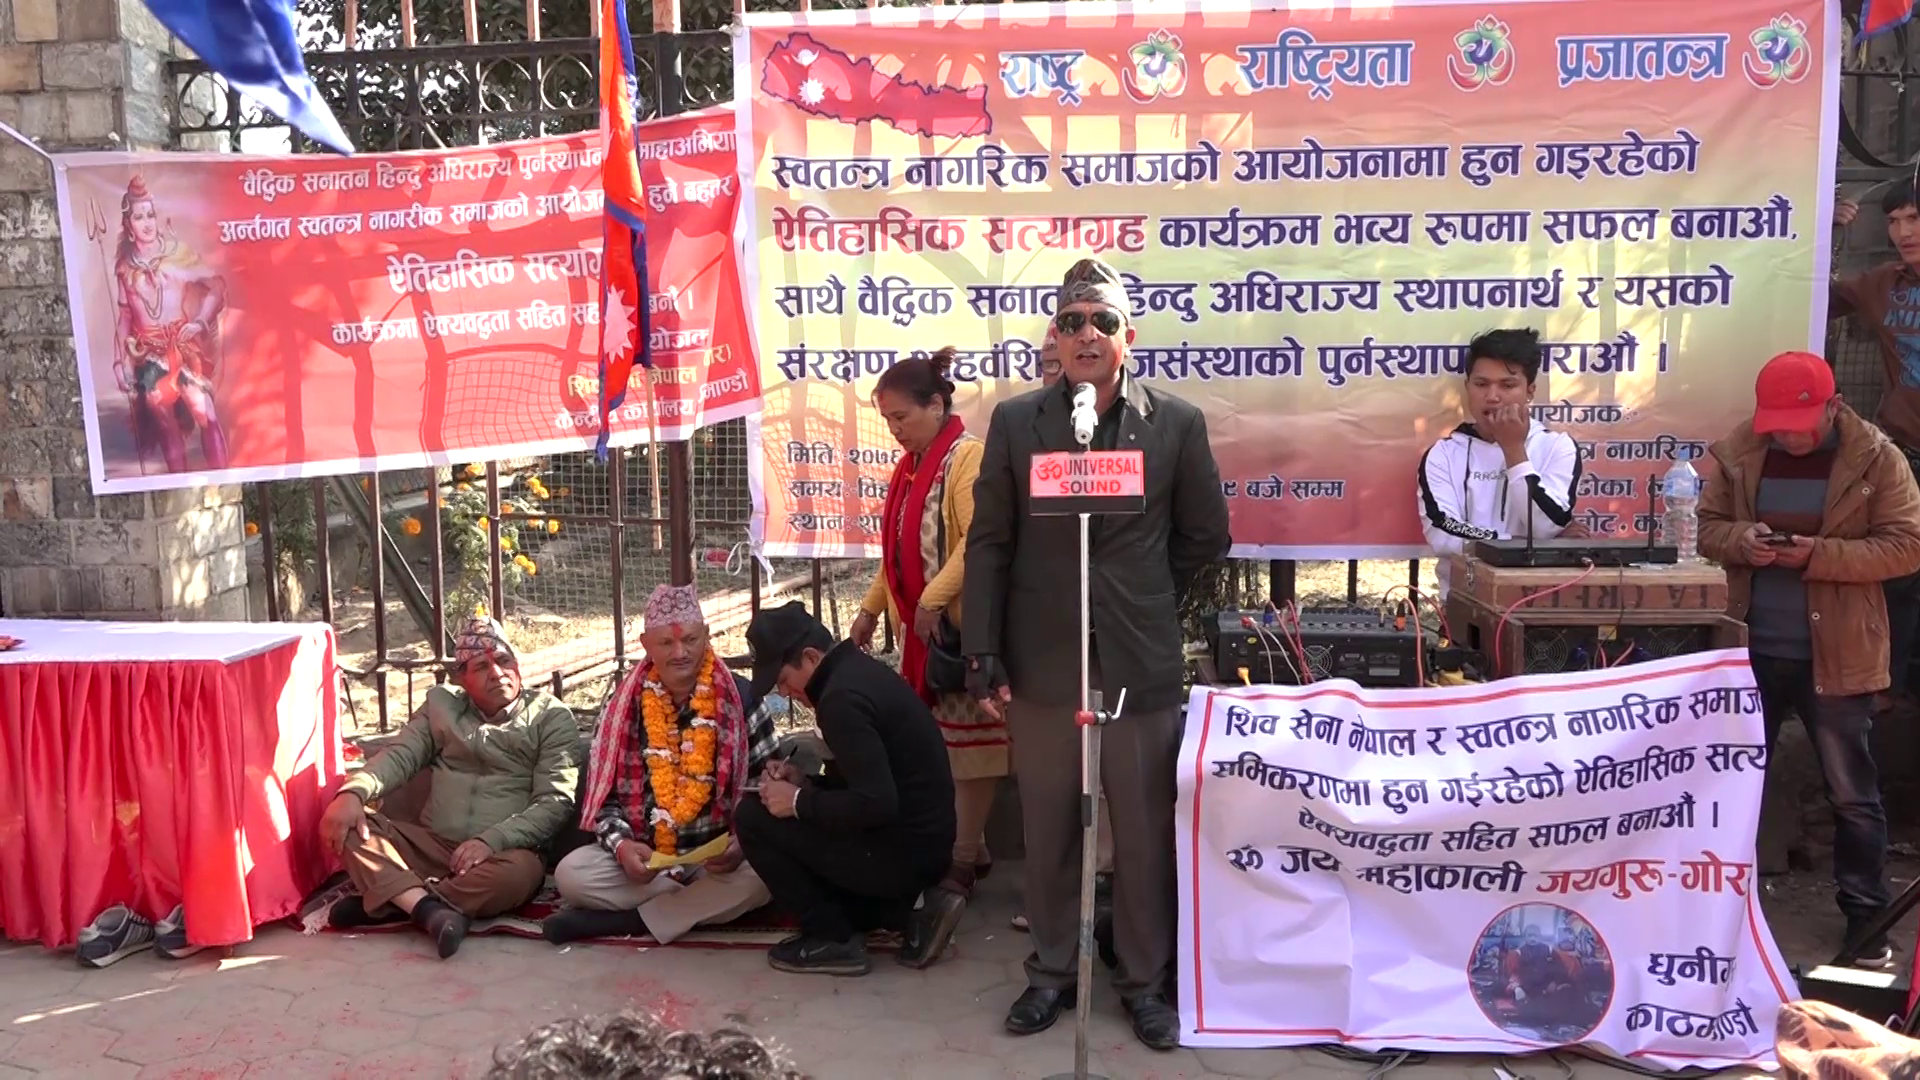 राजसंस्था र हिन्दु राष्ट्र कायम गर्न माग गर्दै काठमाडौँमा ७२ घण्टे सत्याग्रह